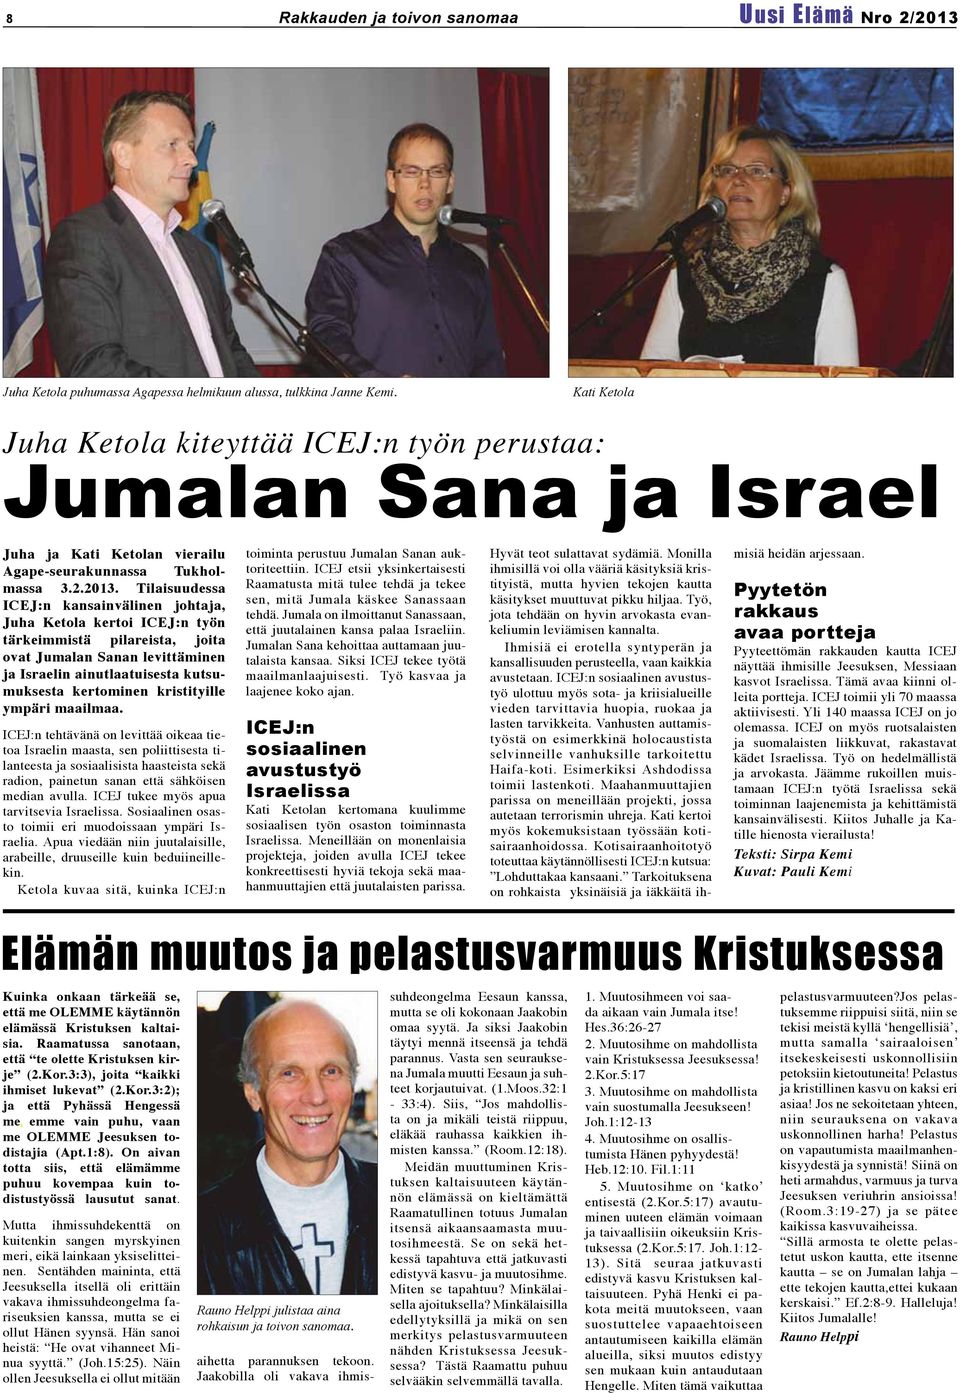 Tilaisuudessa ICEJ:n kansainvälinen johtaja, Juha Ketola kertoi ICEJ:n työn tärkeimmistä pilareista, joita ovat Jumalan Sanan levittäminen ja Israelin ainutlaatuisesta kutsumuksesta kertominen